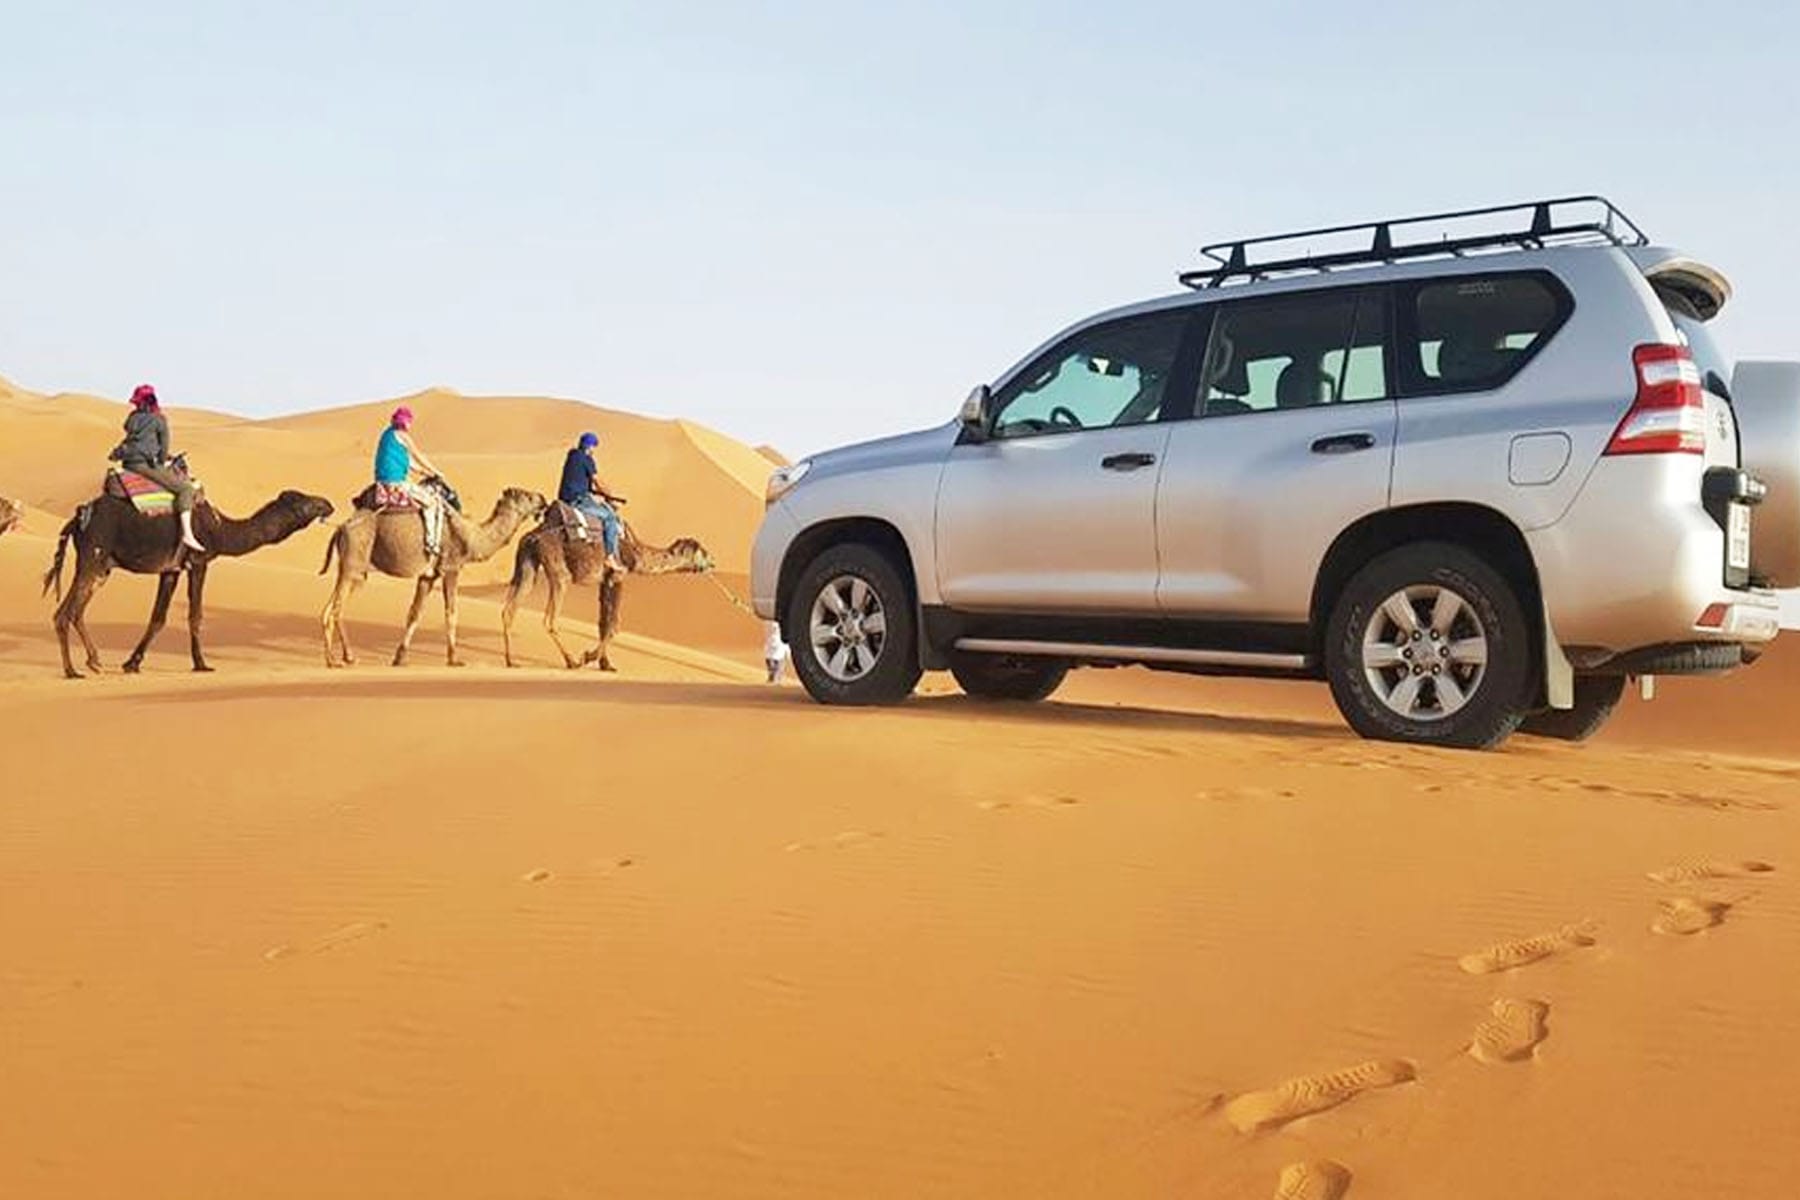 Le sud du Sahara tunisien, une étendue de sable infini, offre bien plus qu'un simple voyage ; c'est une immersion dans l'âme du désert. Chez www.navettetunisie.net , nous vous invitons à découvrir le charme authentique du sud tunisien à travers notre tour unique en chameau et en voiture 4x4. Une Danse avec les Dunes : Tour en Chameau Le Chameau, Compagnon de Voyage Imaginez-vous vous équilibrer doucement sur le dos d'un chameau, votre fidèle compagnon de voyage dans le désert. Les vagues de sable s'étendent à perte de vue, et chaque pas du chameau résonne avec la poésie du Sahara. C'est une expérience sensorielle, un voyage dans le temps où le rythme lent du chameau vous permet de vous connecter profondément avec le paysage. Les Secrets des Nomades Nos guides, des nomades du désert, partageront avec vous des histoires ancestrales, des traditions transmises de génération en génération. Vous ne serez pas simplement un spectateur, mais un participant actif dans cette aventure culturelle. Vivez le désert à travers les yeux de ceux qui l'appellent leur maison. Conquérir l'Inexploré : Balade en Voiture 4x4 La Puissance du 4x4 dans le Sahara Pour les amateurs d'adrénaline et d'aventure, notre tour en voiture 4x4 offre une expérience palpitante. Les dunes ne sont plus des obstacles, mais des terrains de jeu. Nos conducteurs experts vous emmèneront là où les routes conventionnelles s'arrêtent, offrant une vue imprenable sur les horizons sans fin du Sahara. Flexibilité et Confort Laissez vous derrière les itinéraires rigides. Avec notre balade en voiture 4x4, vous avez la flexibilité d'explorer les coins les plus reculés du désert. Le confort de nos véhicules garantit que votre aventure est aussi agréable que passionnante. Réservez Votre Expérience Inoubliable Embarquez avec www.navettetunisie.net pour un voyage qui transcende les frontières du conventionnel. Réservez votre visite en chameau et en voiture 4x4 dès aujourd'hui et préparez-vous à une aventure qui restera gravée dans votre mémoire. www.navettetunisie.net , Votre Portail vers l'Inoubliable Chez Navette Tunisie, nous vous offrons plus qu'un simple voyage ; nous vous invitons à une expérience. Notre tour en chameau et en voiture 4x4 dans le Sahara tunisien promet l'authenticité, l'aventure et des souvenirs qui dureront toute une vie. Rejoignez-nous et explorez le désert d'une manière qui va au-delà de l'ordinaire.